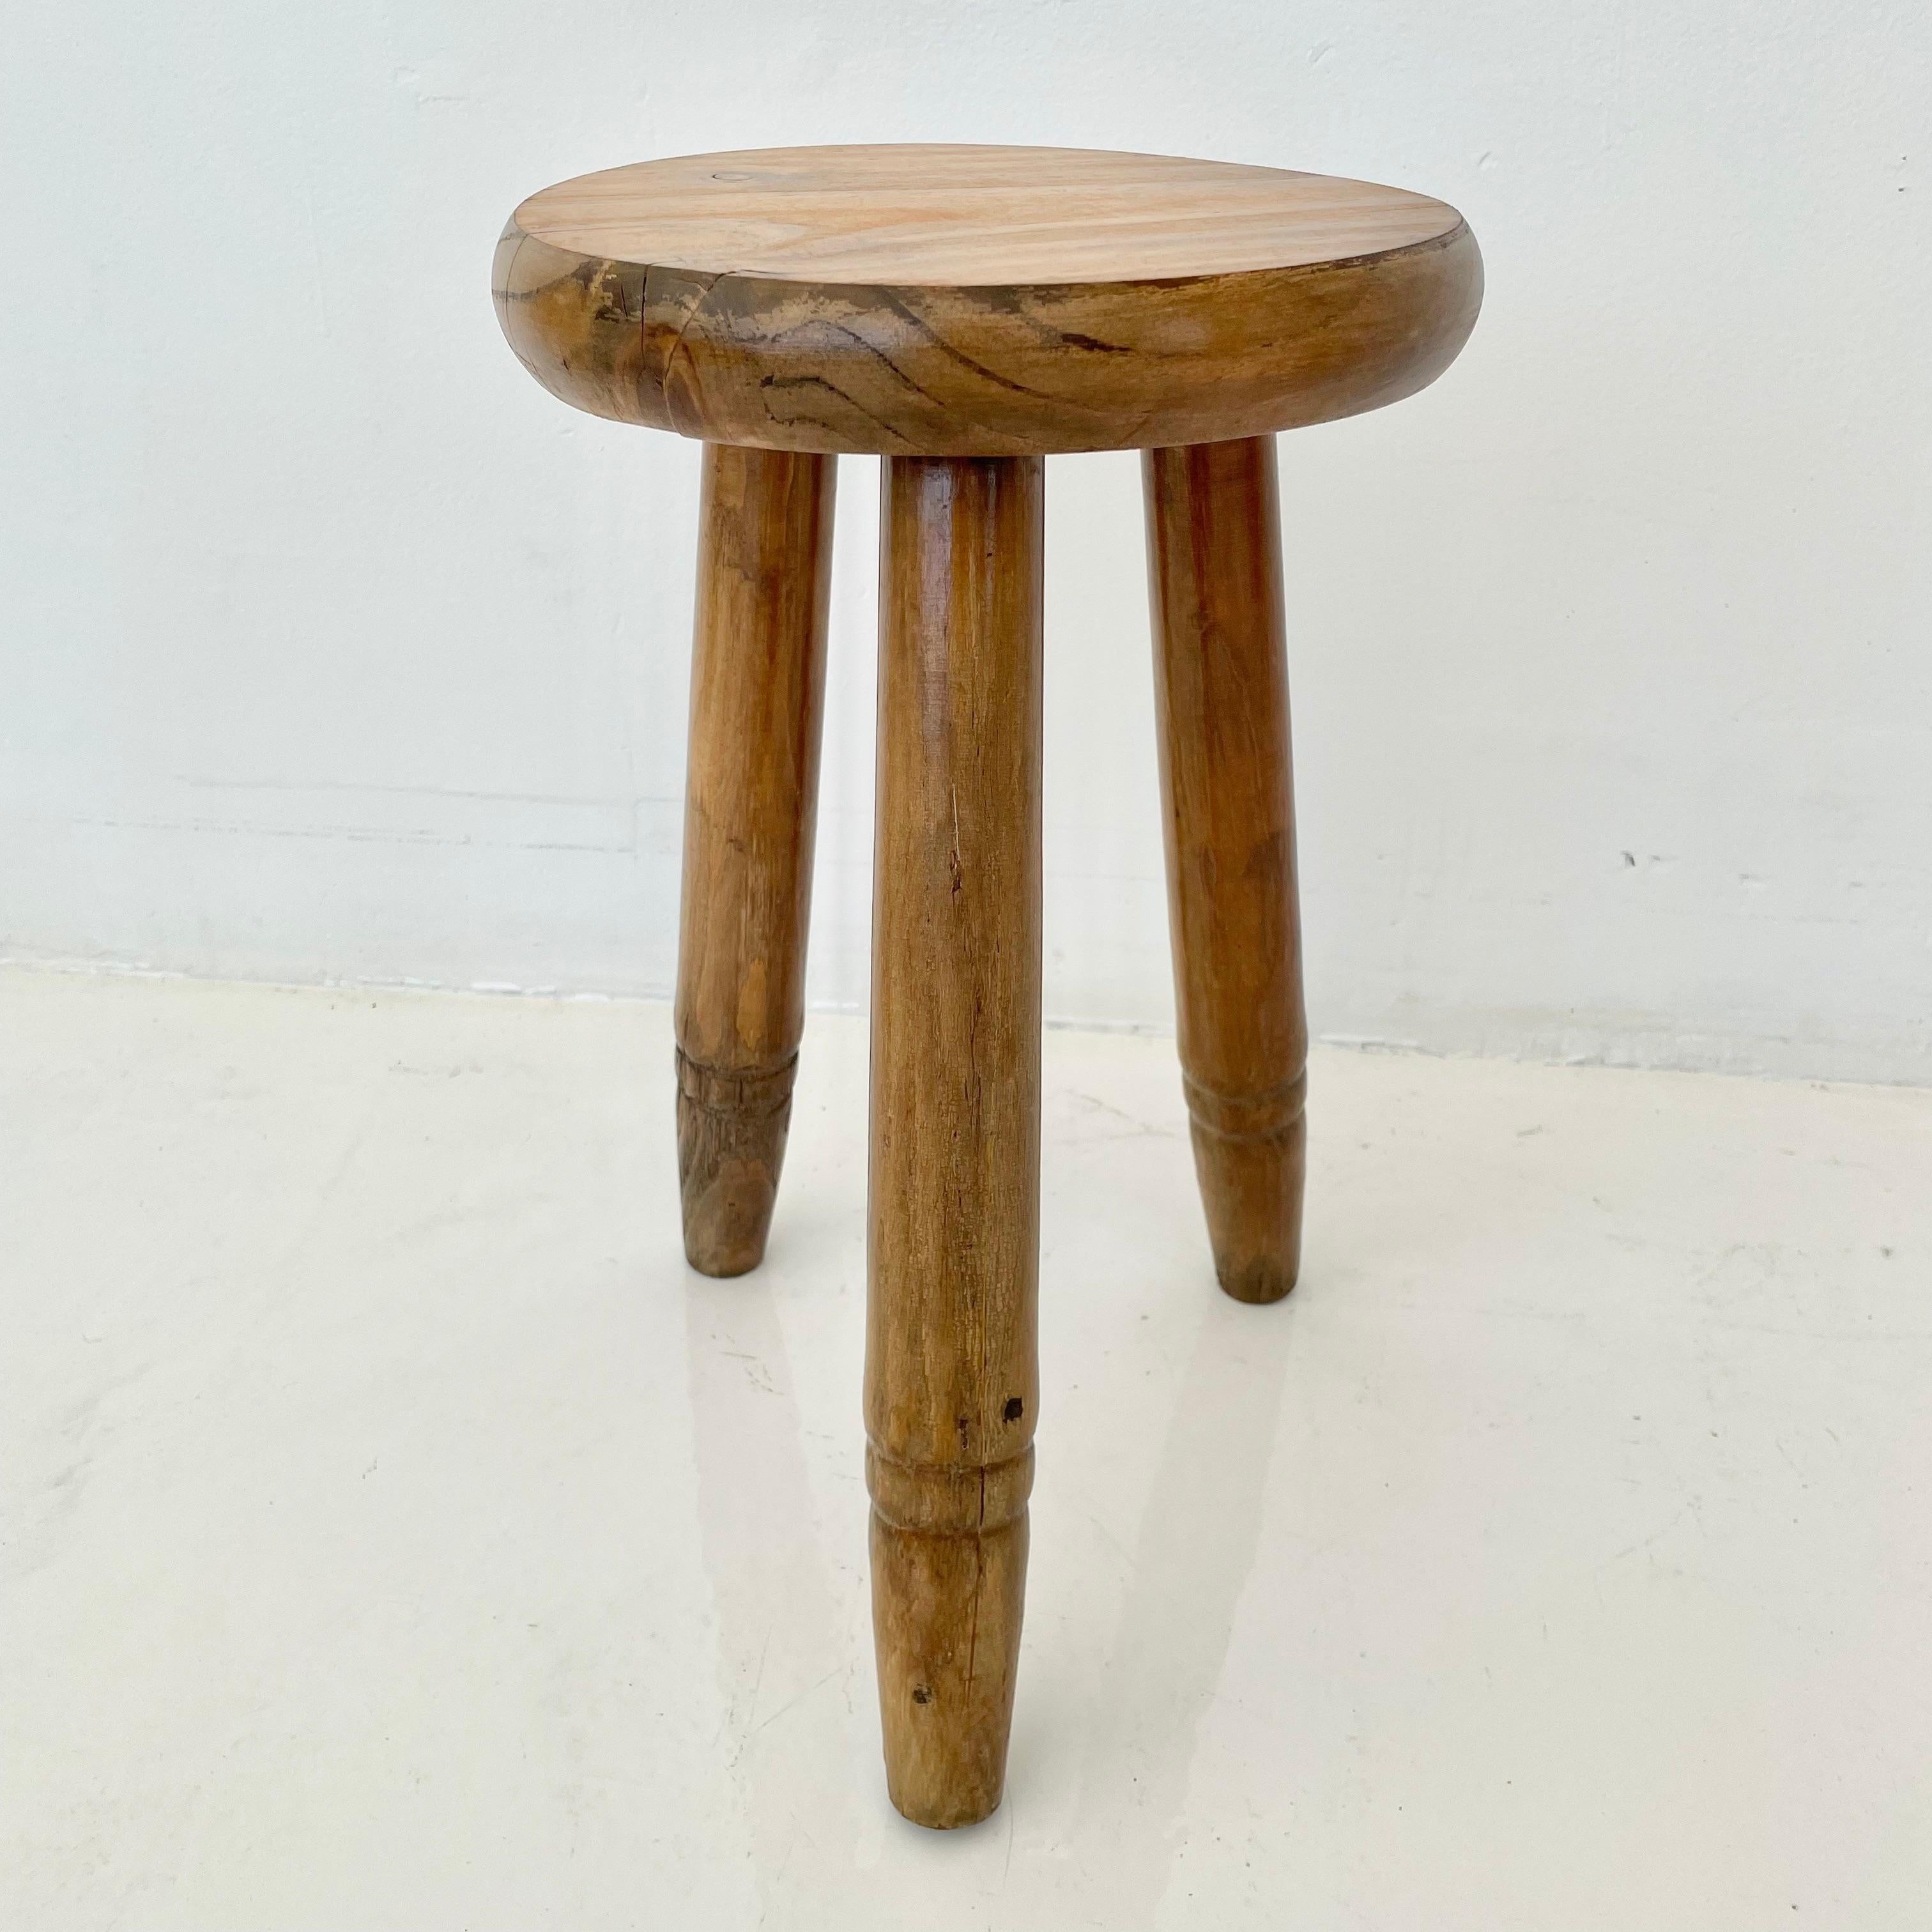 Vintage-Holzhocker, hergestellt in Frankreich, ca. 1950er Jahre. Dicker Sitz und dreibeinige Beine mit Rippen, die sich nach unten hin verjüngen. Keine Nägel oder Beschläge. Großartige Linien und Formen. Rustikaler, zierlicher Hocker mit viel